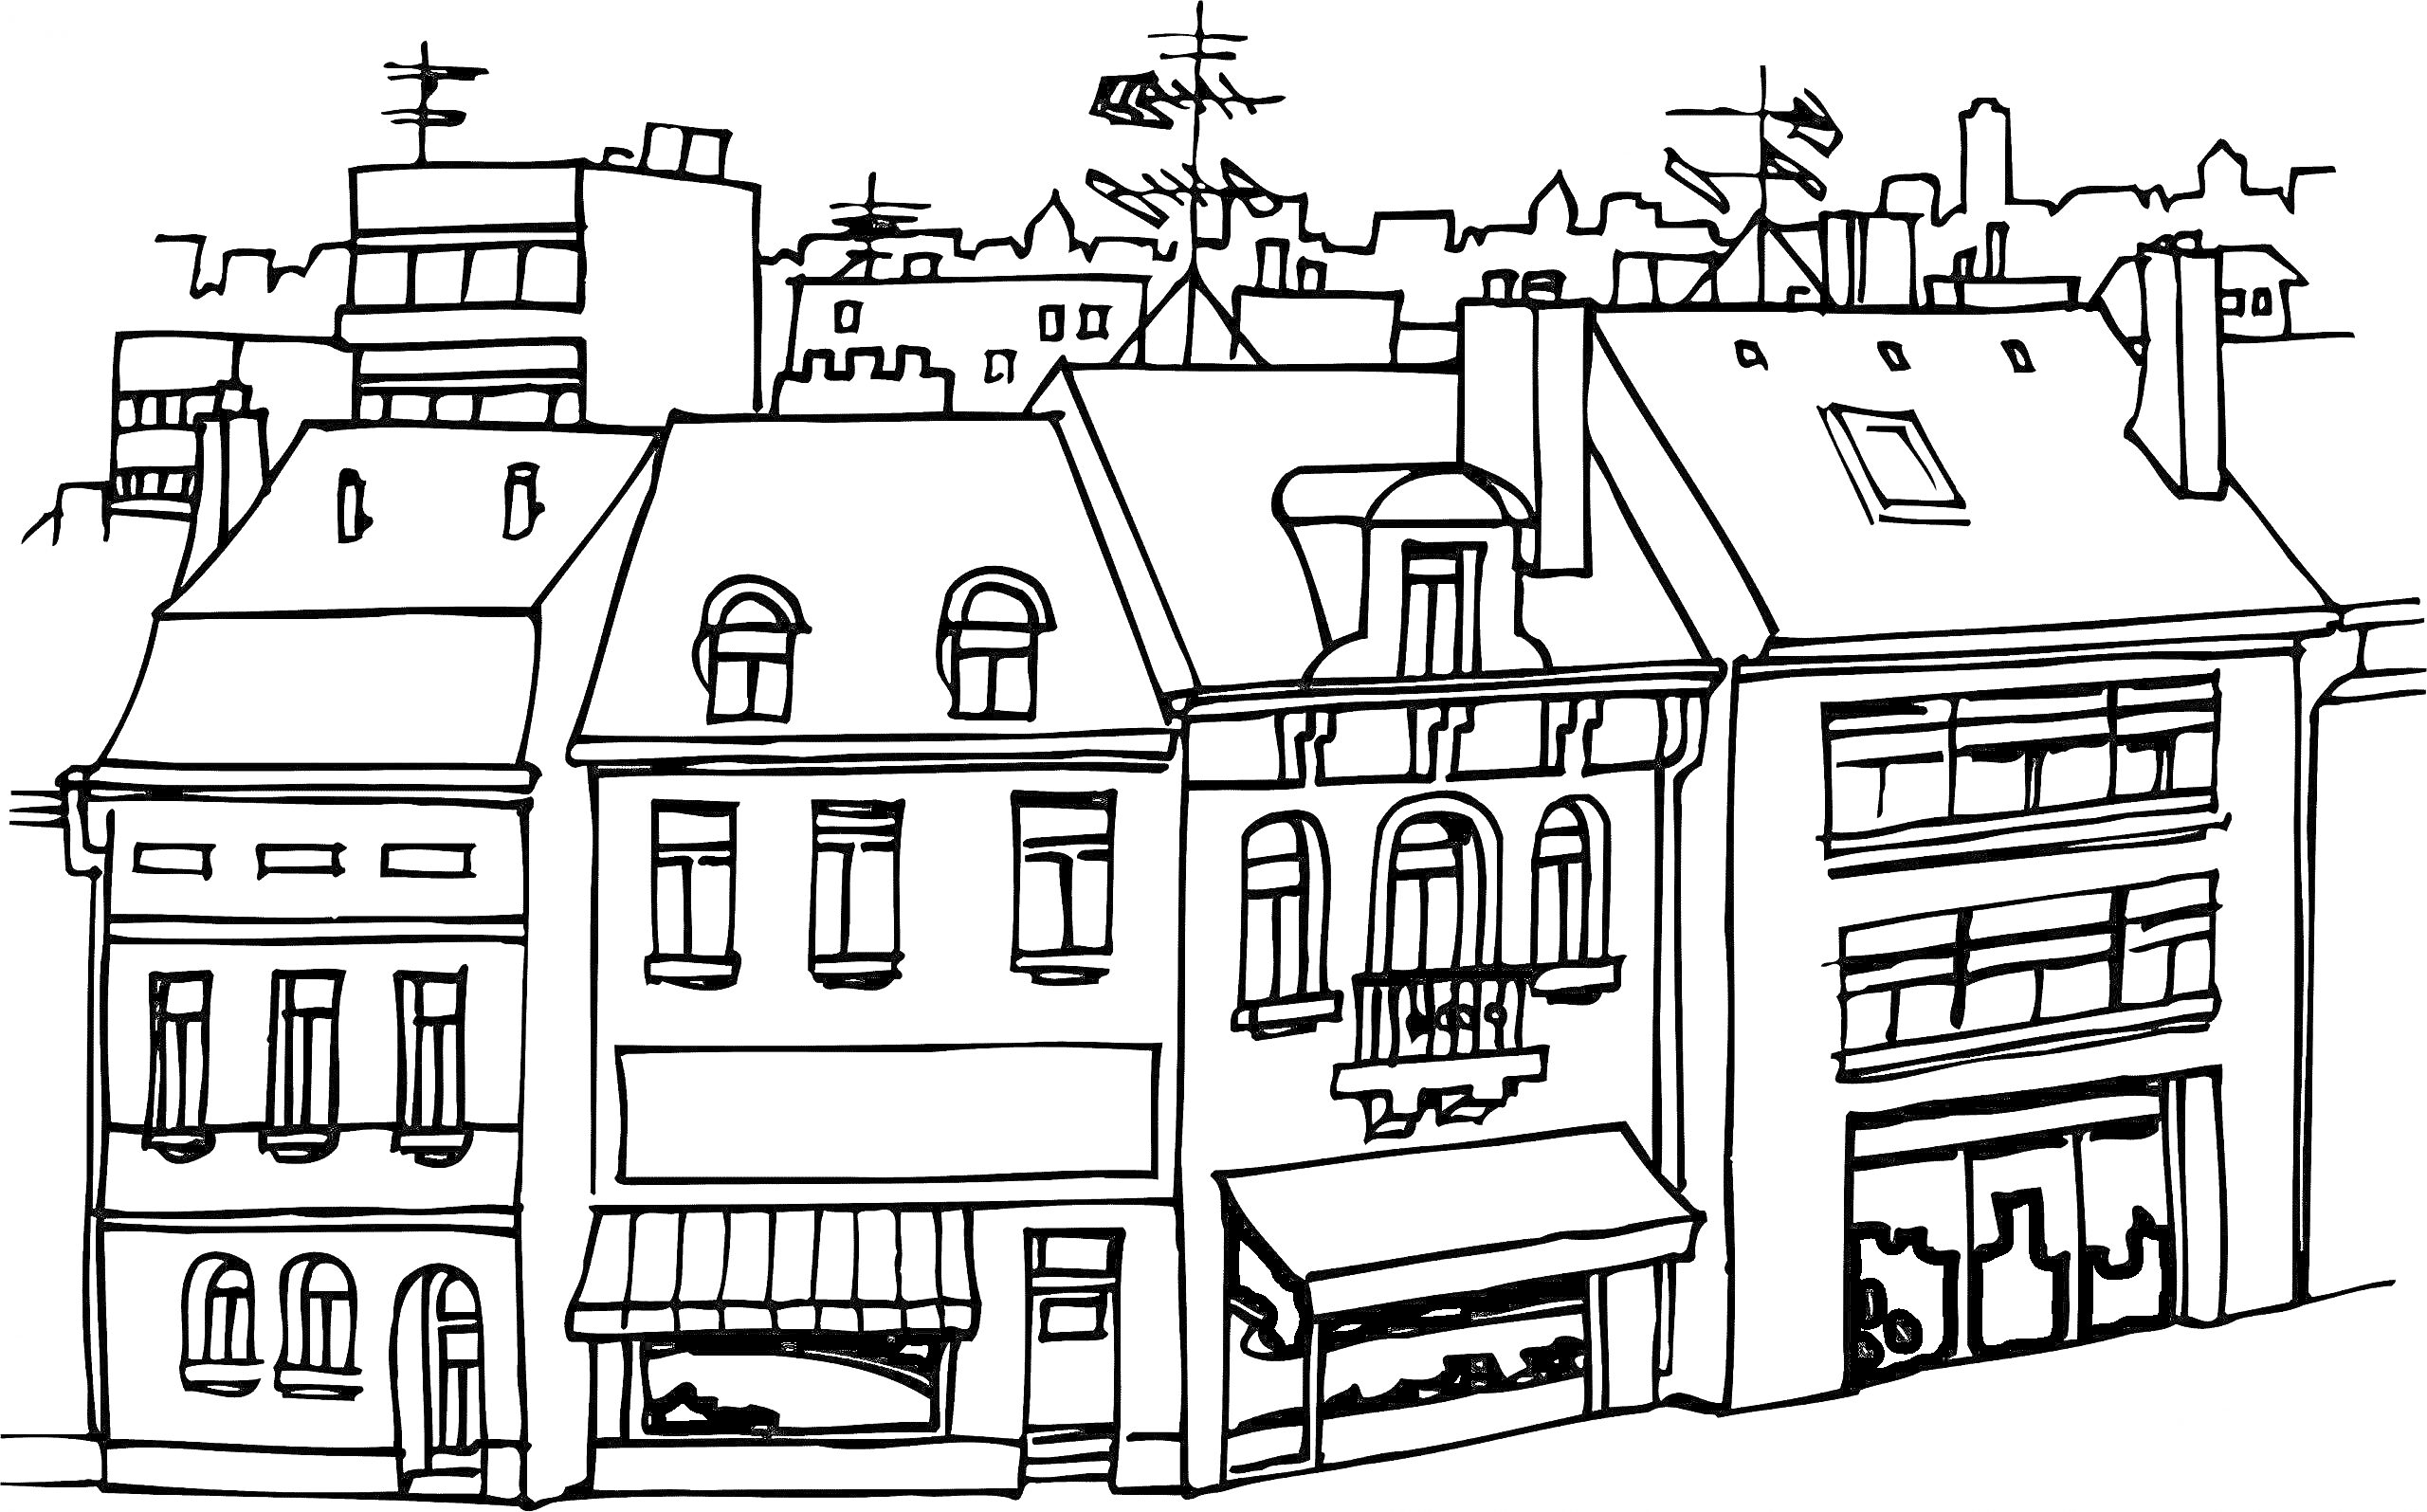 Городская улица с жилыми и коммерческими зданиями, витринами магазинов, мансардными окнами и антеннами на крышах